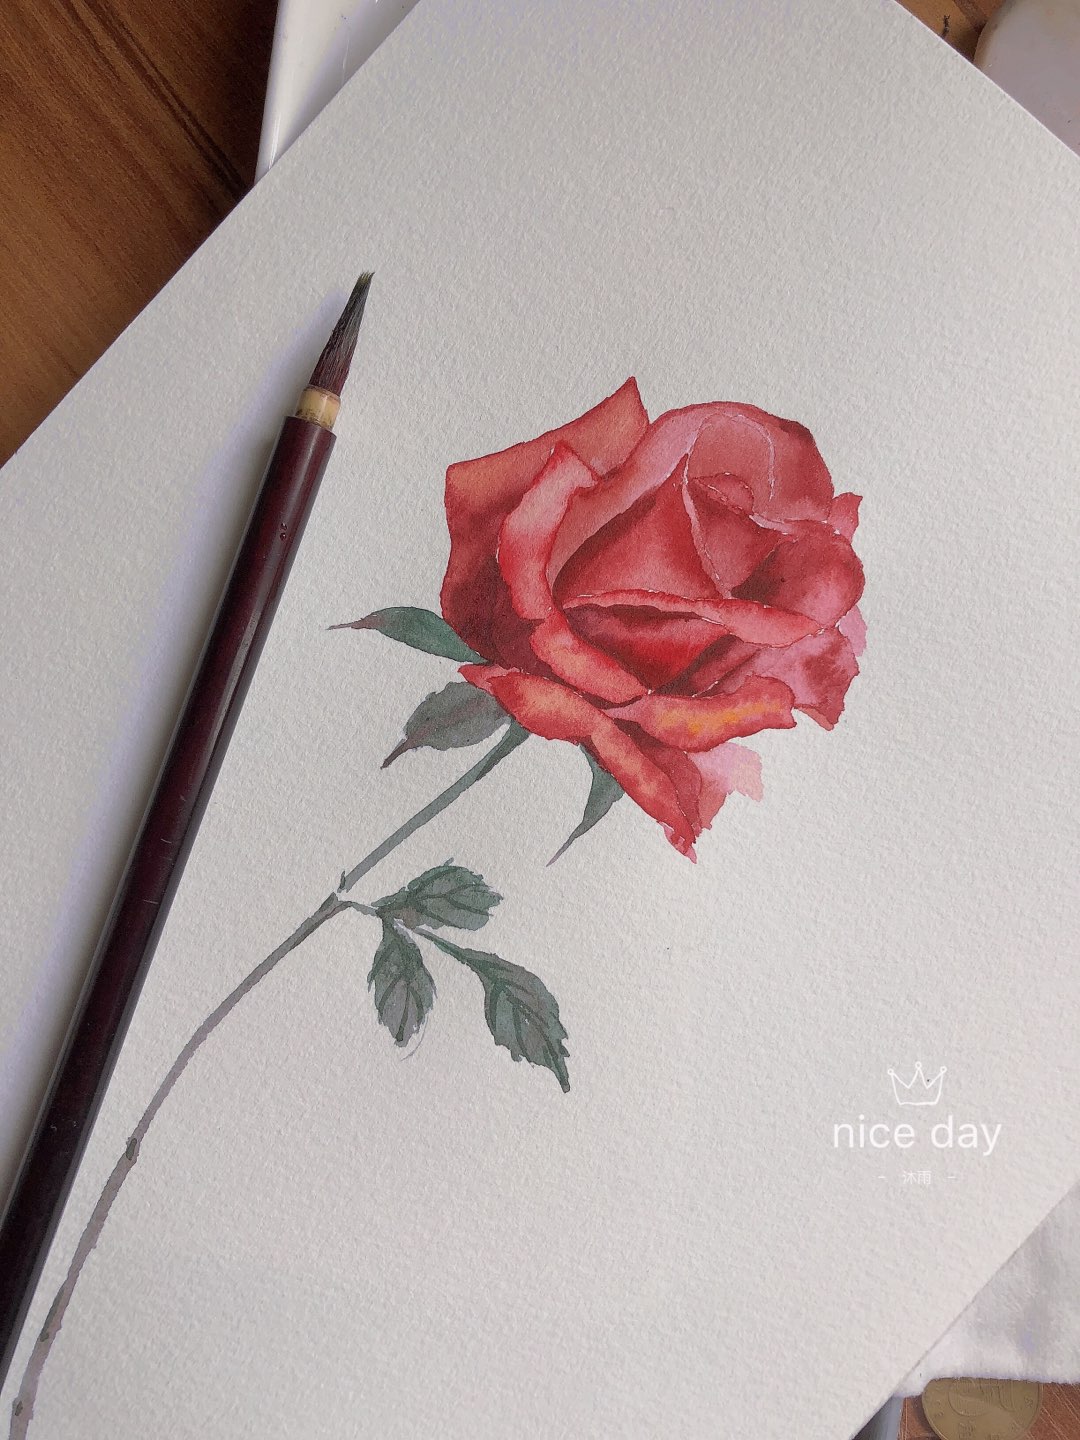 玫瑰是我画来的 但爱你是真的